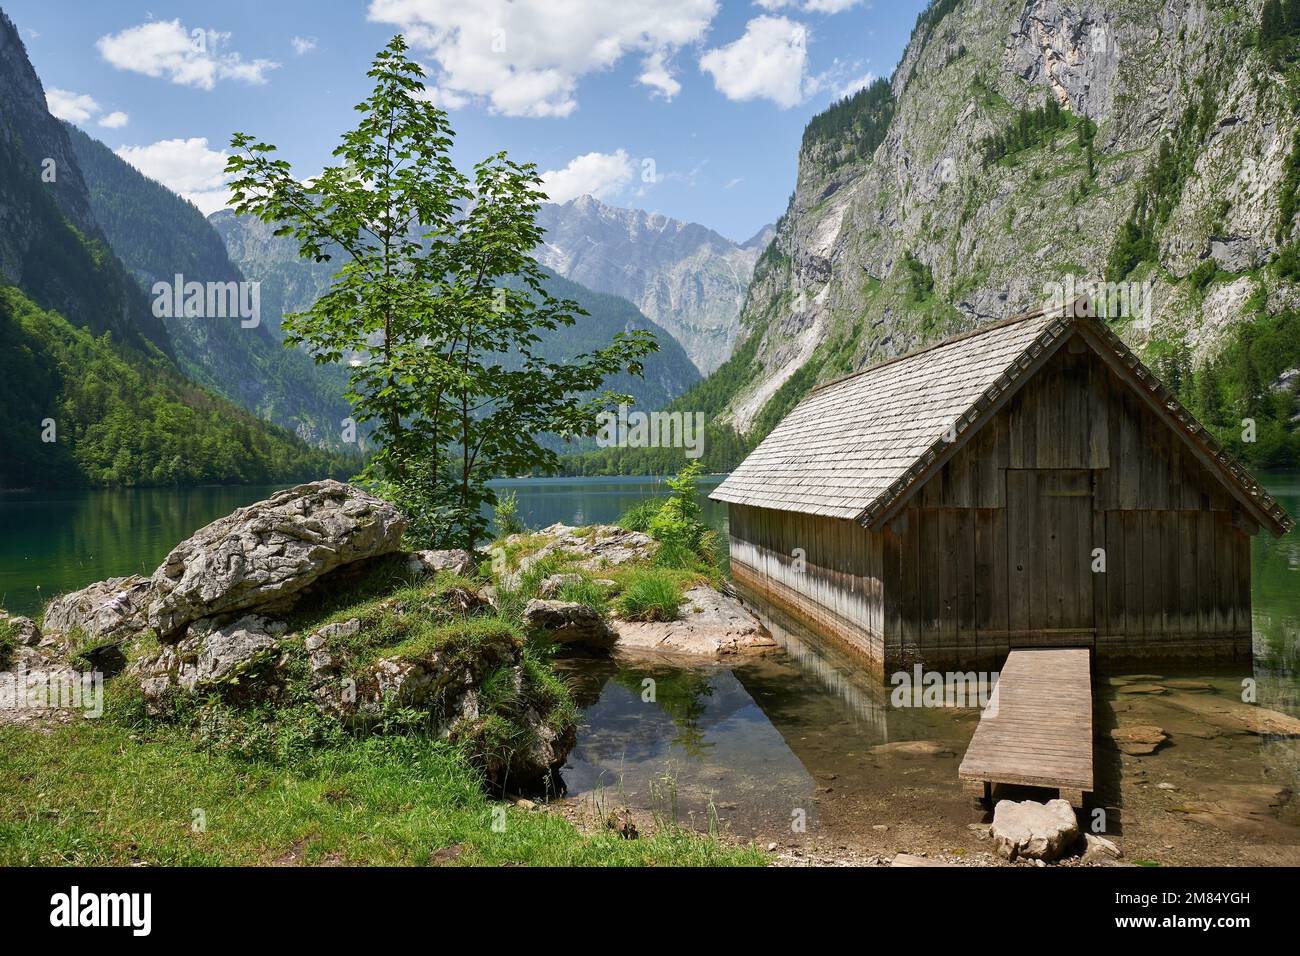 Hütte am Obersee-Nationalpark Berchtesgaden Foto de stock